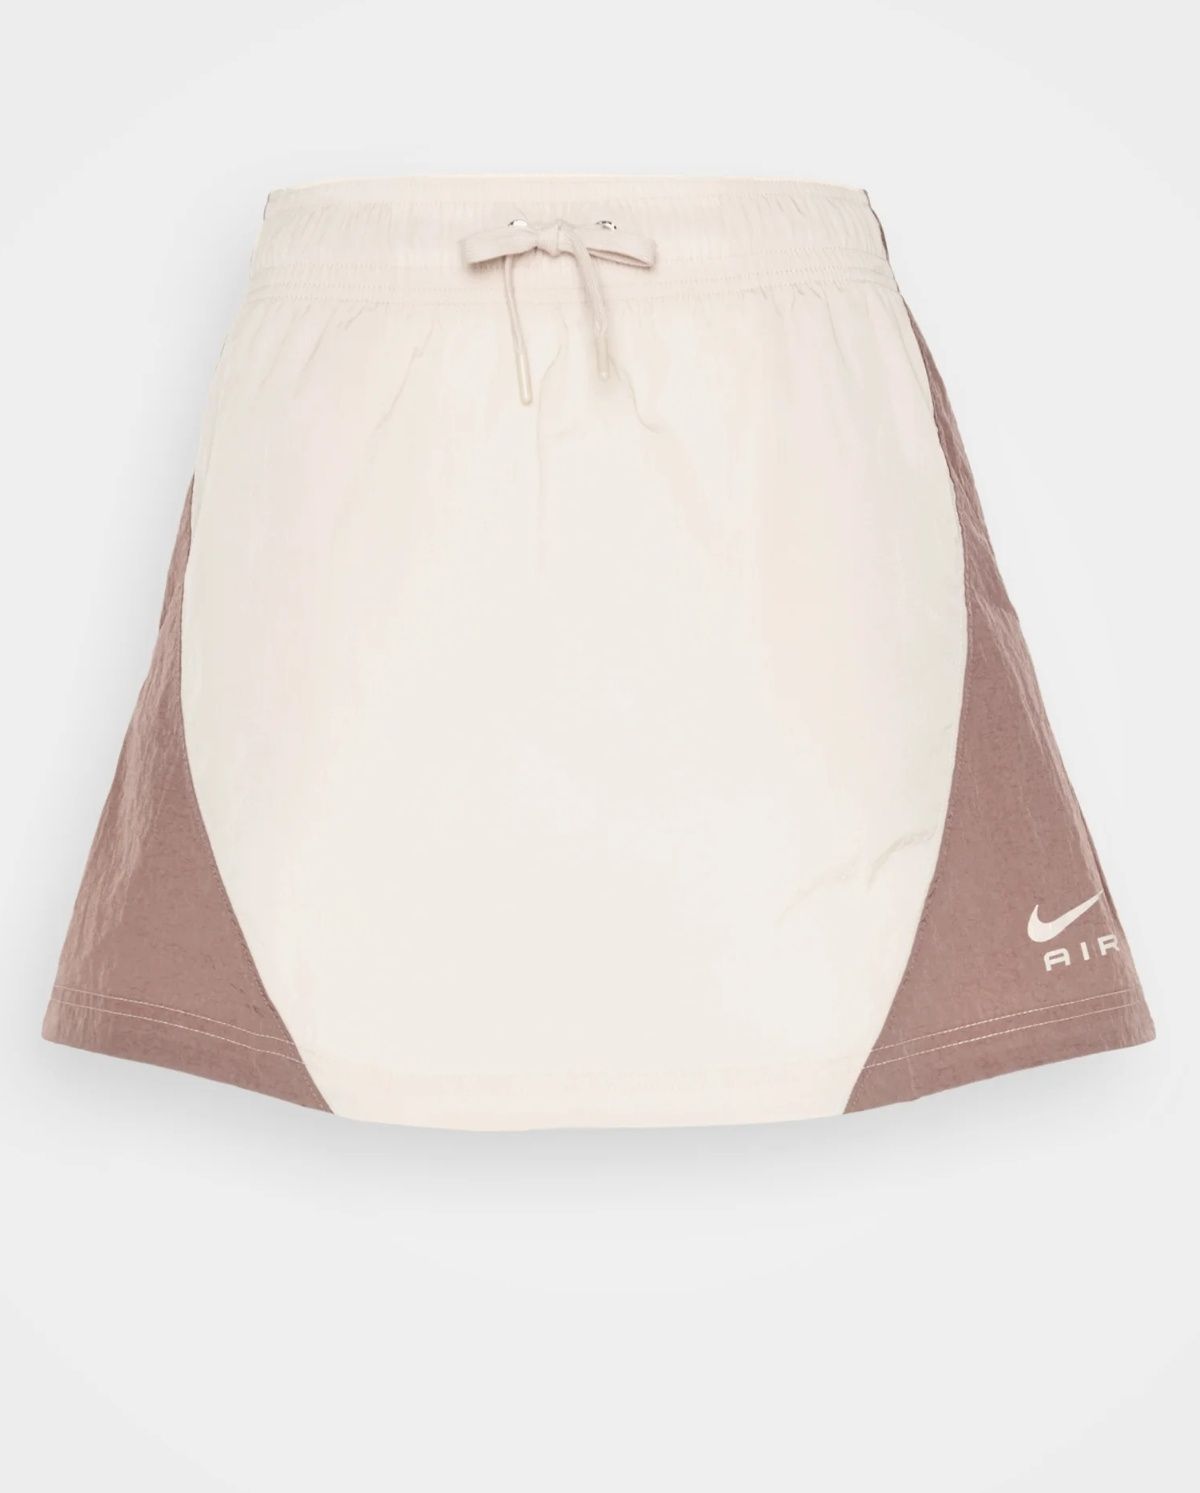 Fustă Nike Sportswear Air Skirt mărime XS/S/M nouă cu etichetă